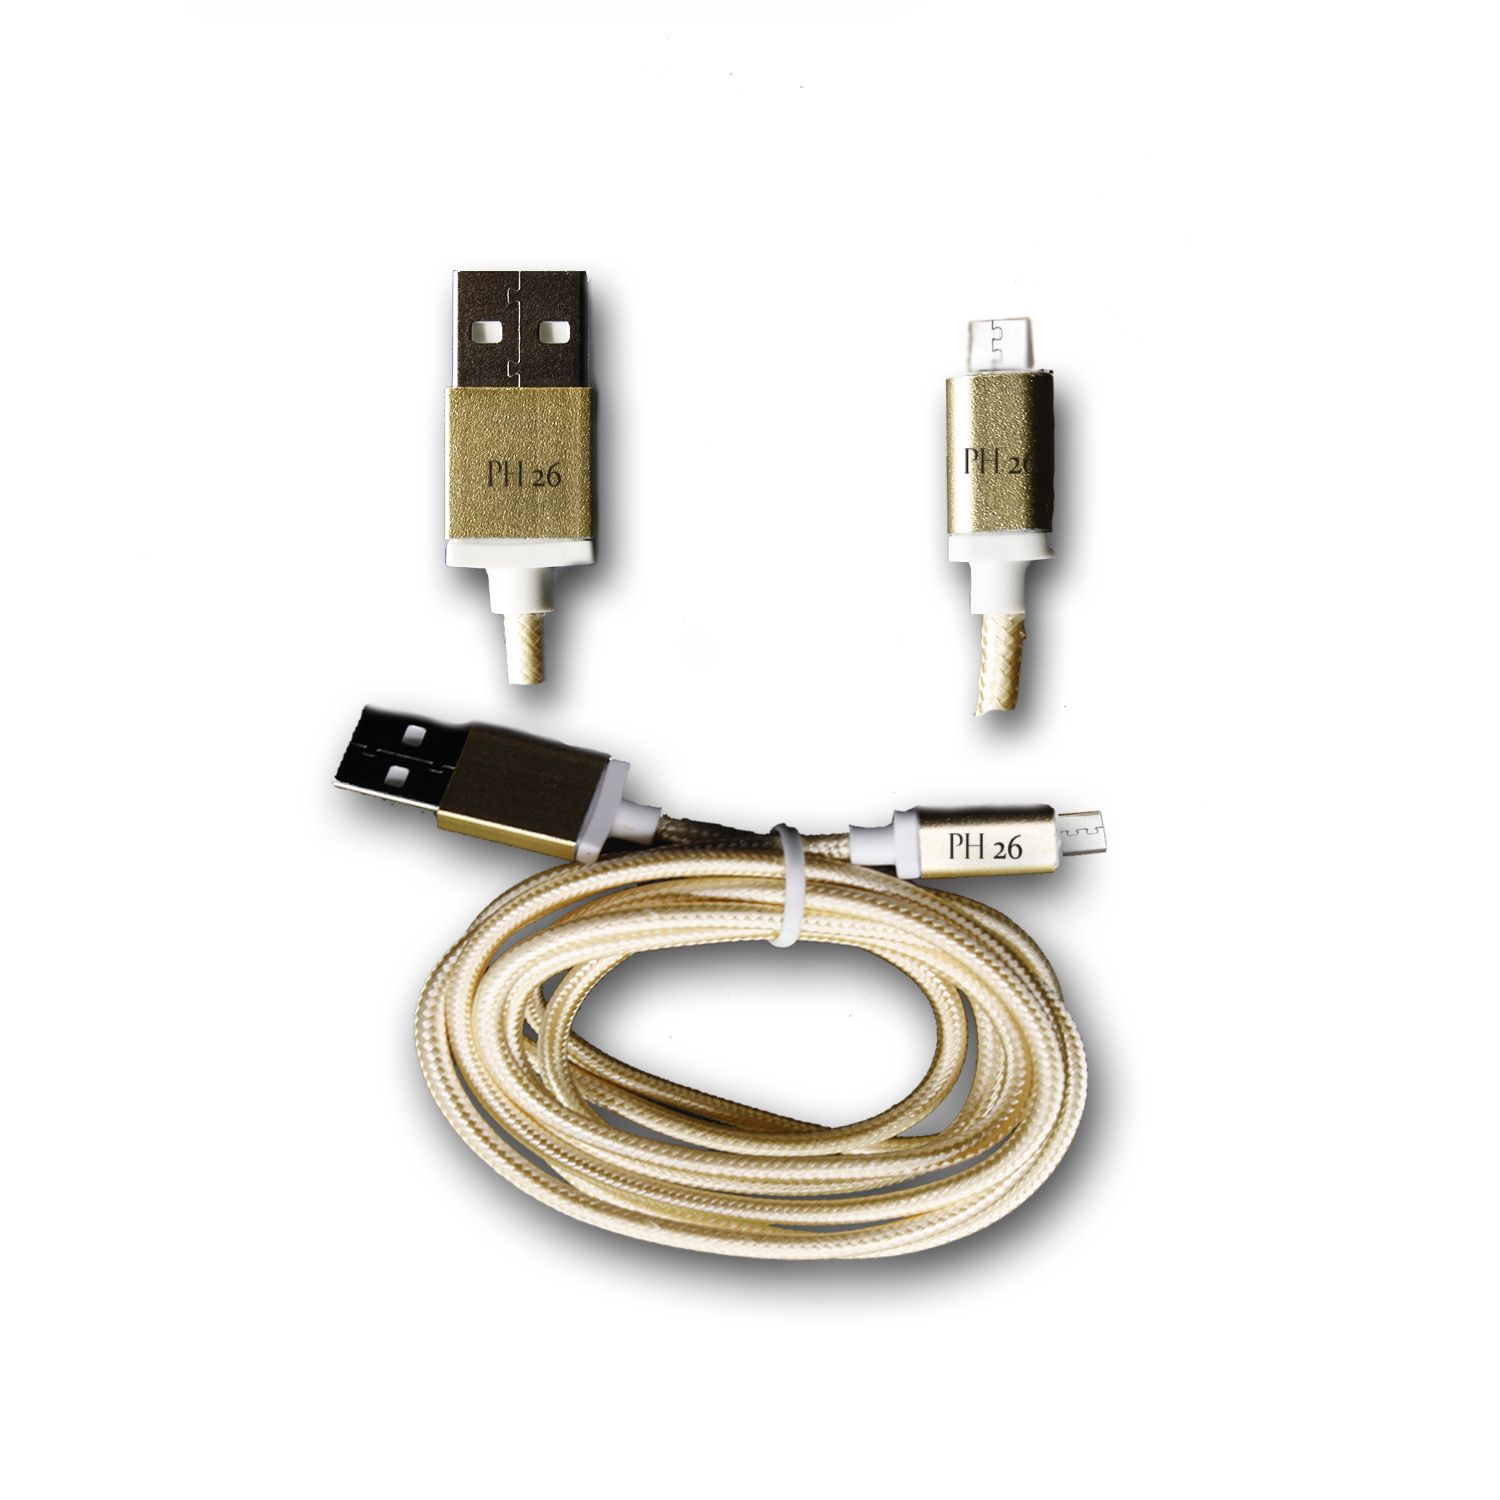 Huawei Y5 2 Câble Data OR 1M en nylon tressé ultra Résistant (garantie 12 mois) Micro USB pour charge, synchronisation et transfert de données by PH26 ®